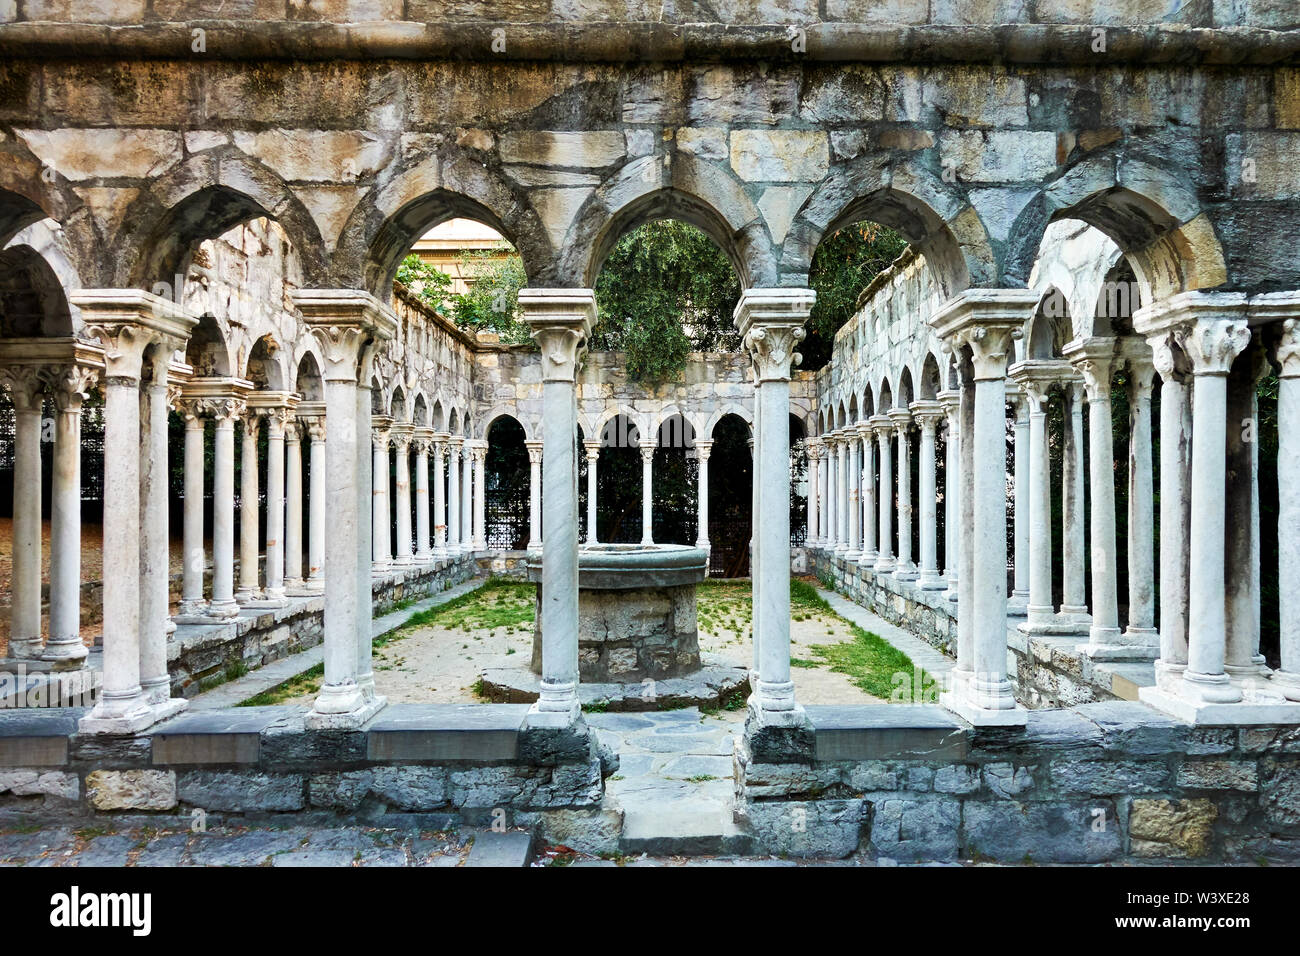 Columns of Chiostro di Sant'Andrea monastery in Genoa, Italy Stock Photo